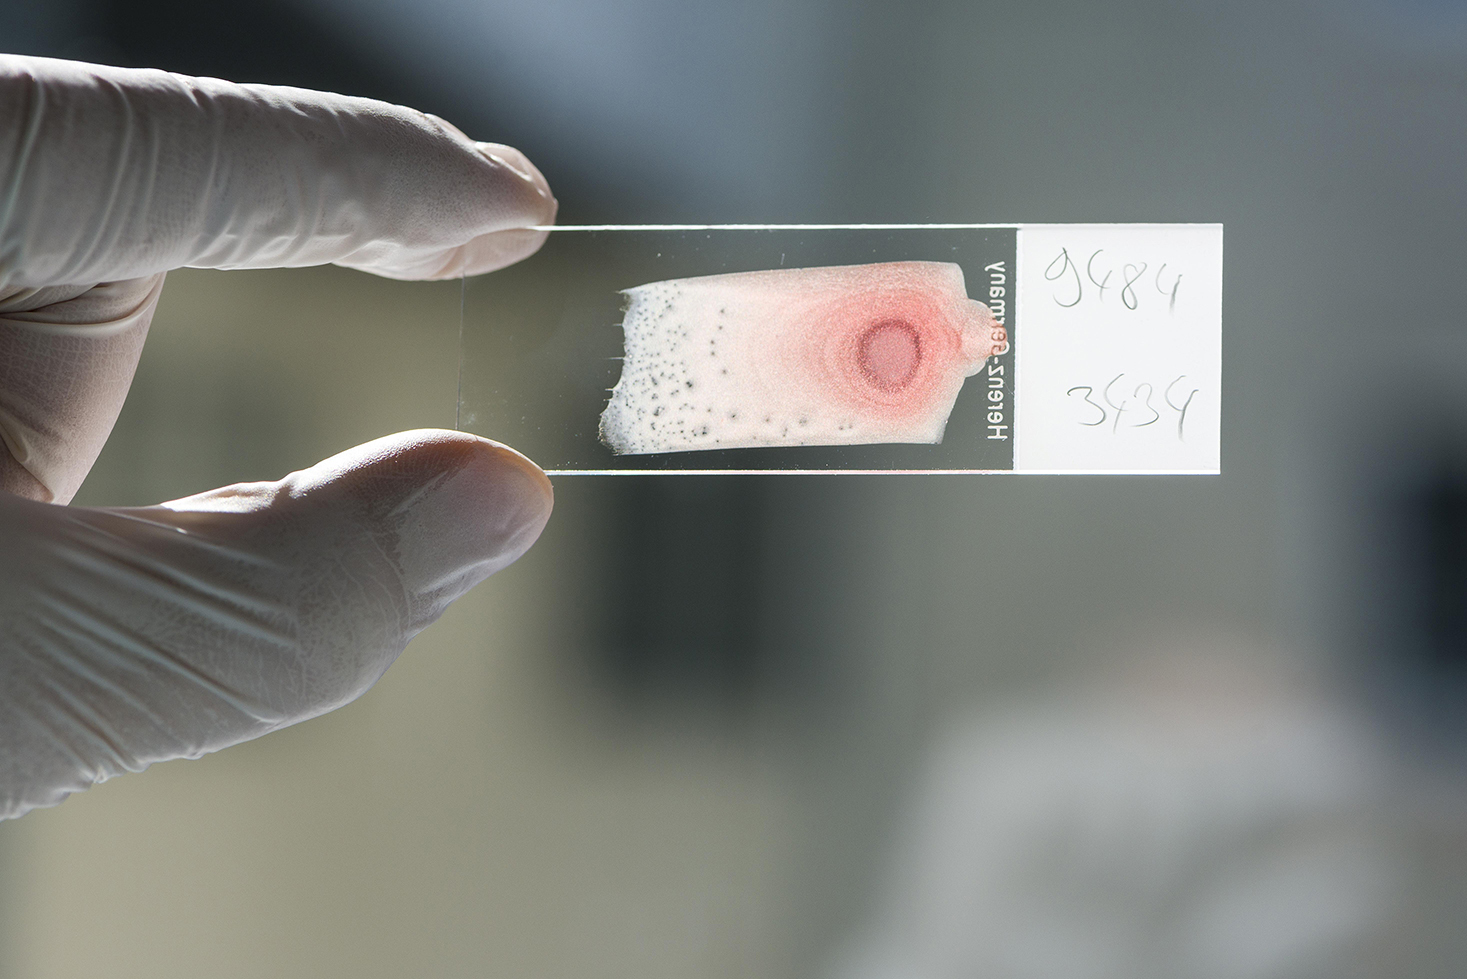 Исследование пятен спермы на одежде в лаборатории